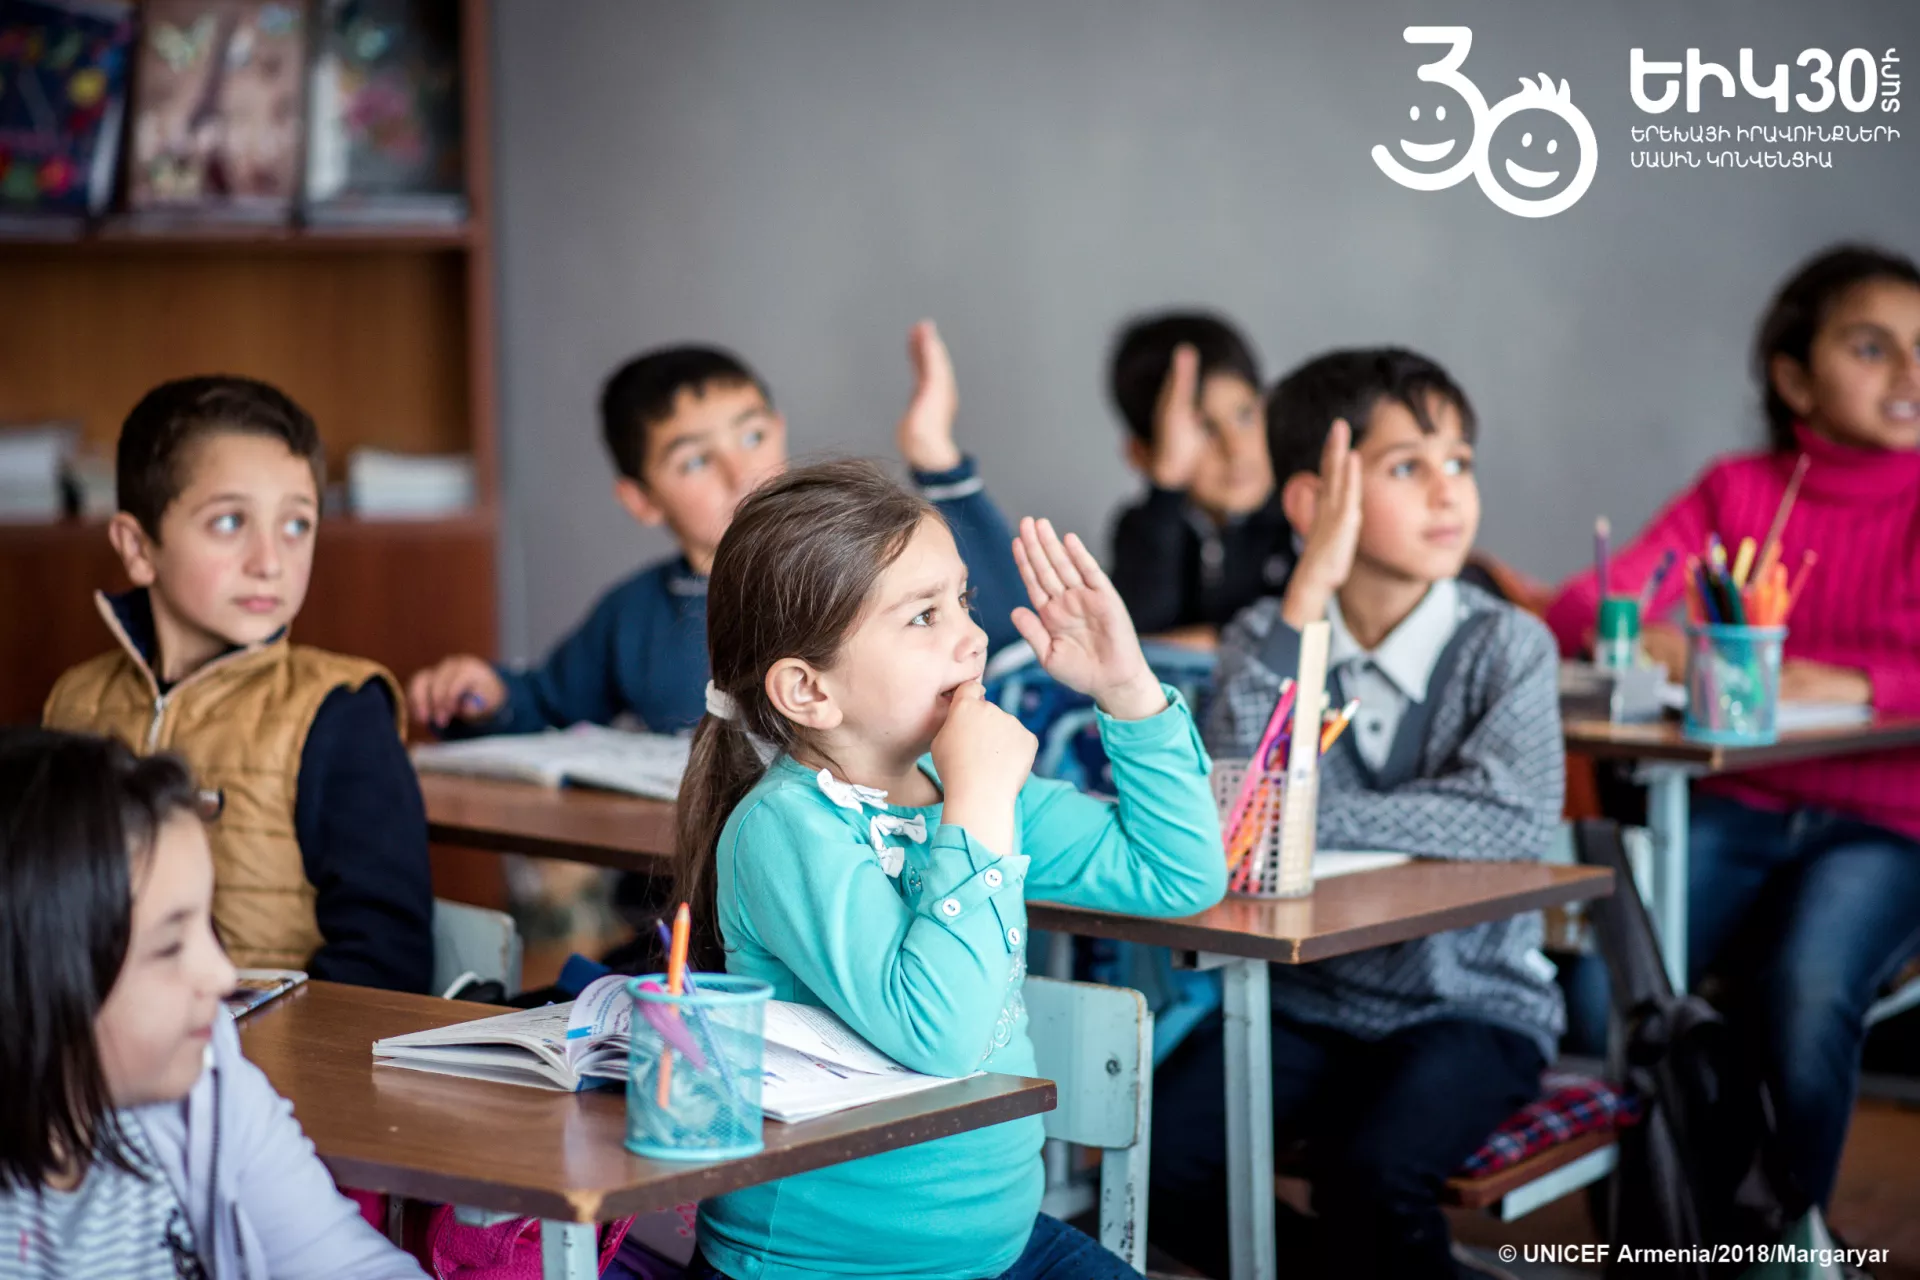 Սպիտակ քաղաքի դասարաններից մեկում անգլերենի դաս է: Երեխաները ձեռք են բարձրացնում, որպեսզի պատասխանեն ուսուցչի հարցին: